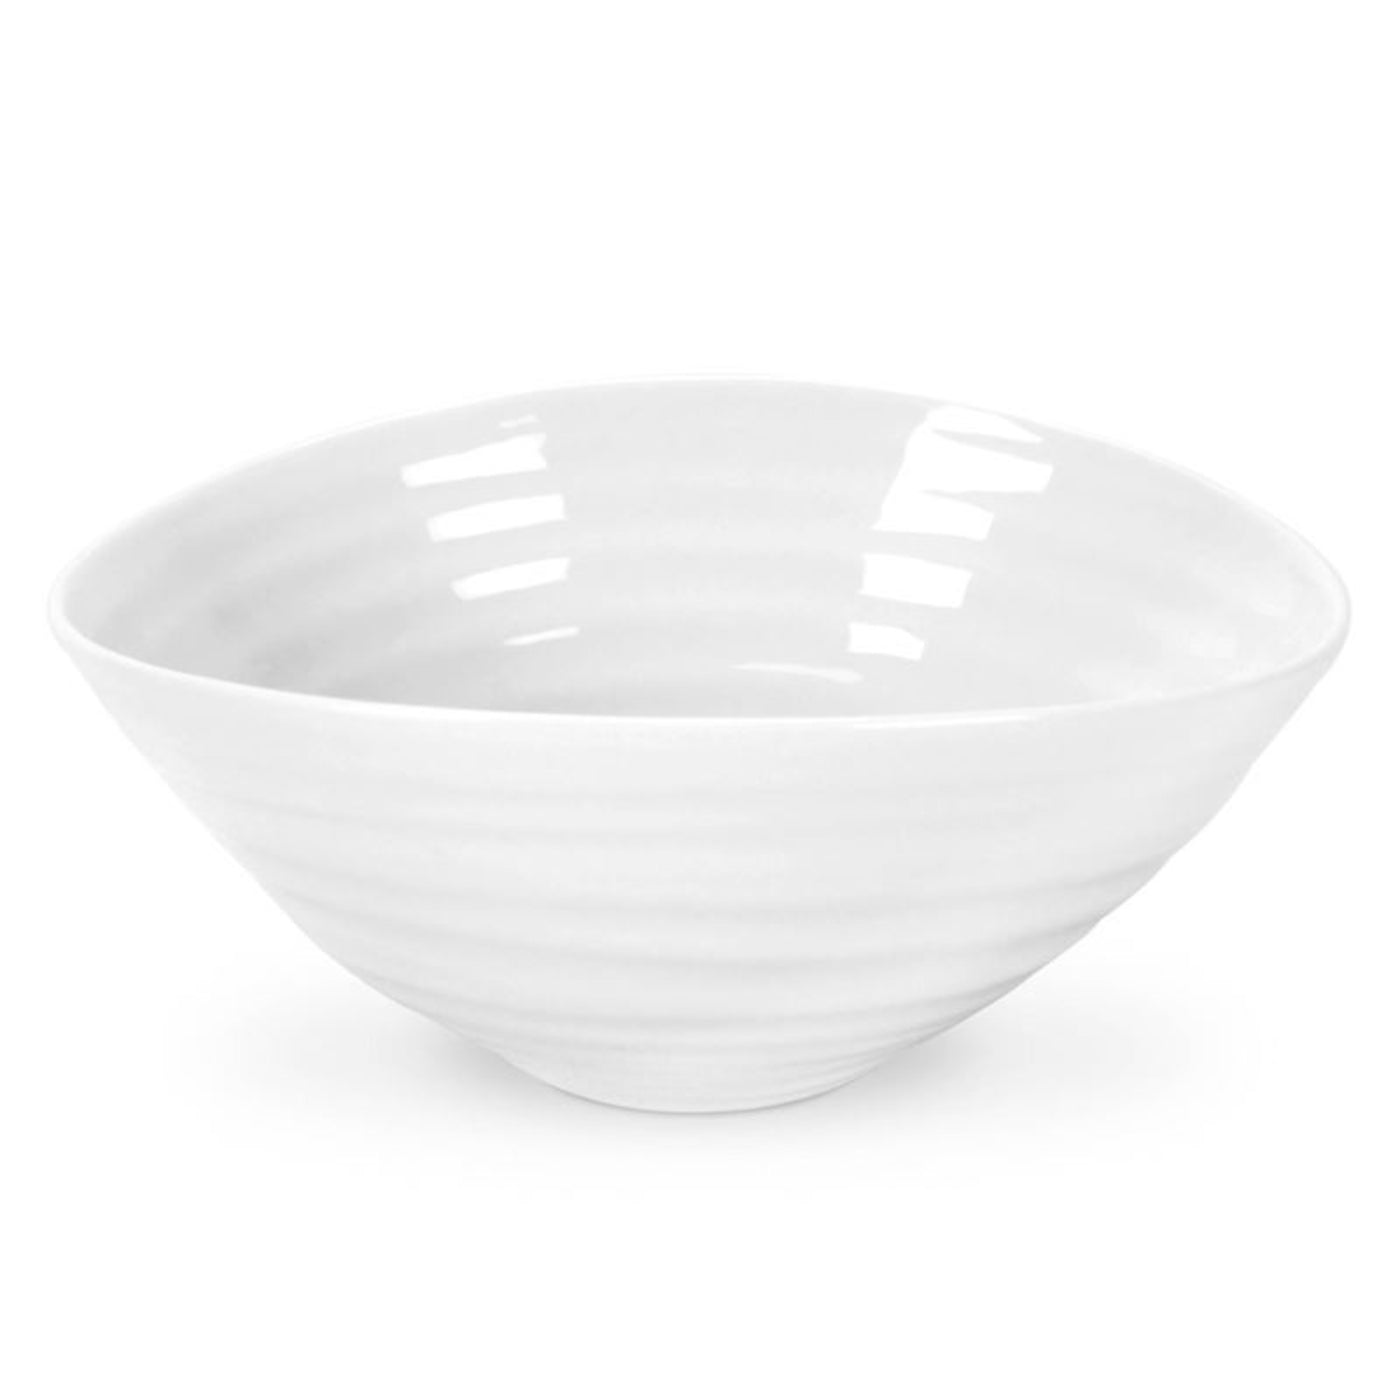 Portmeirion Sophie Conran Small Bowl White 11cm